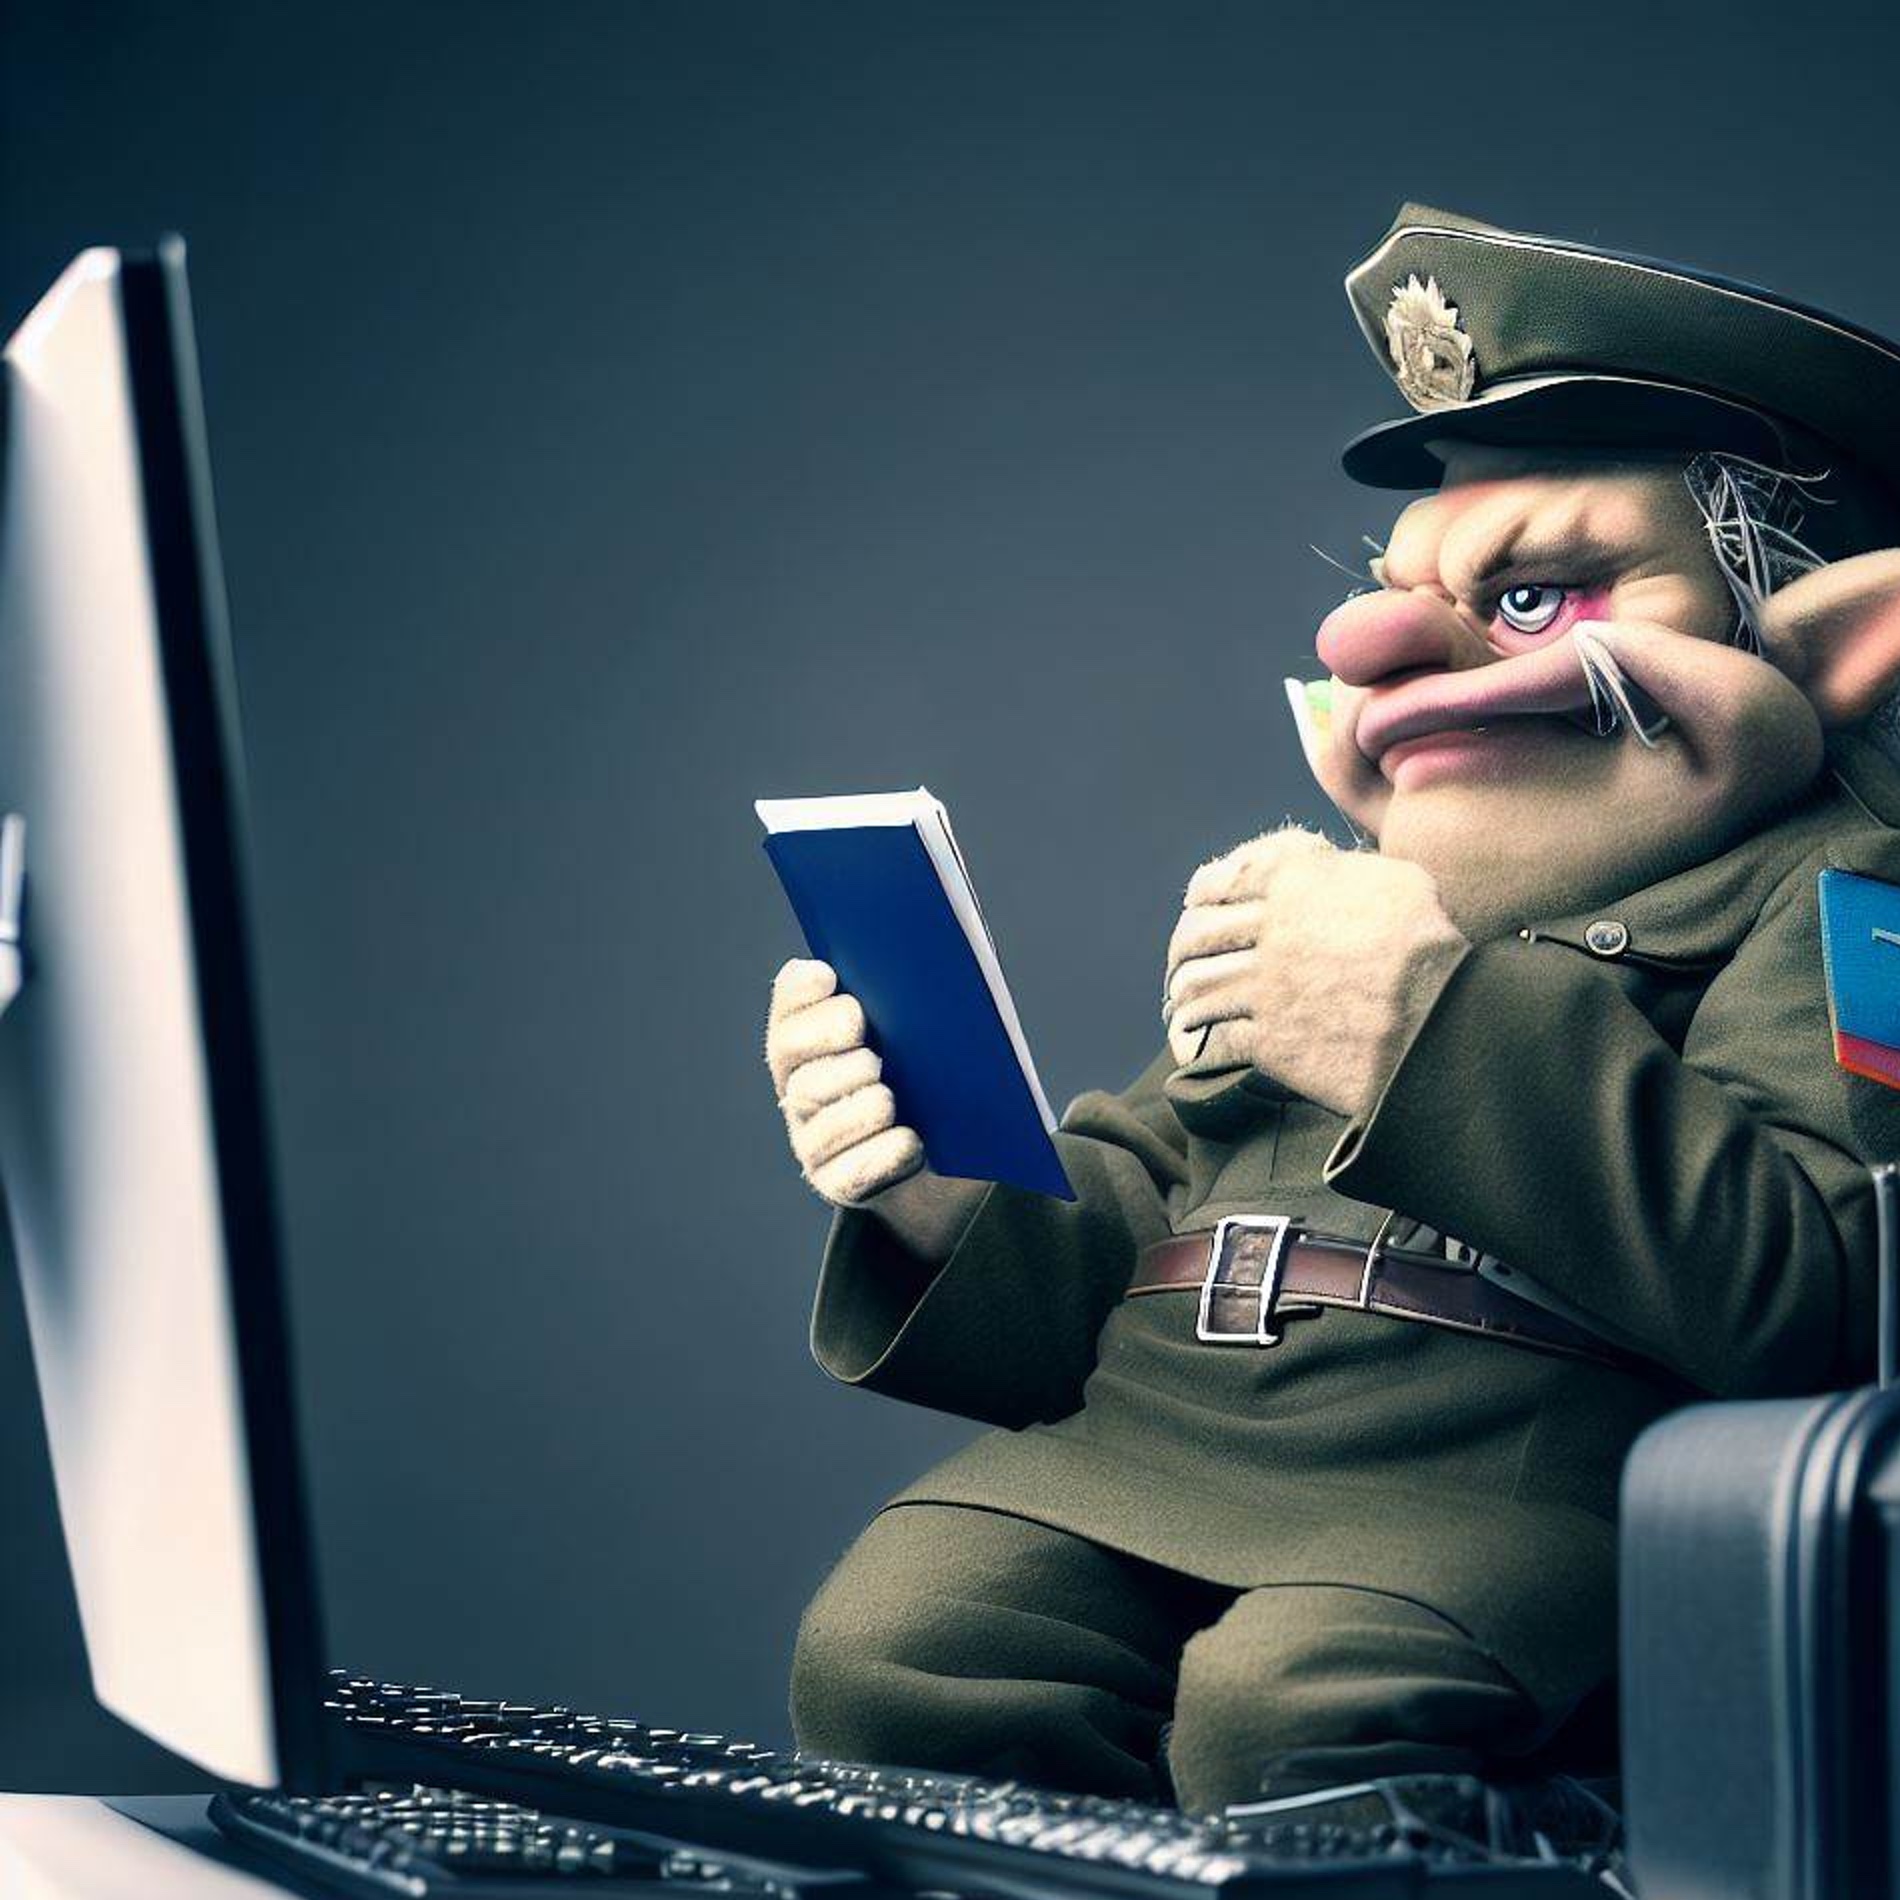 Bild: Troll in Uniform, der vor einem Computer sitzt und einen Ausweis kontrolliert